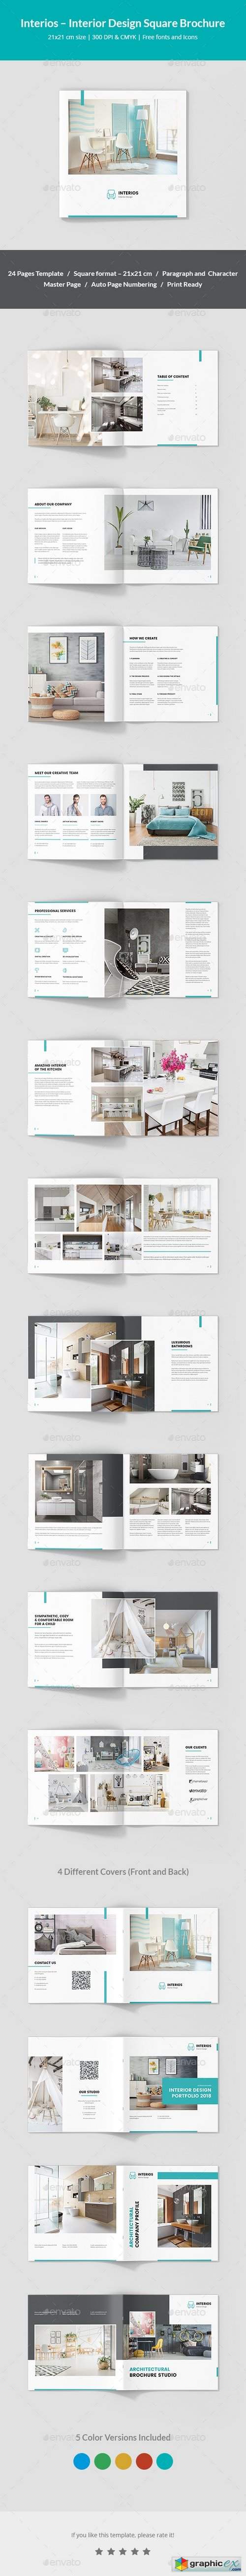 Interios – Interior Design Square Brochure